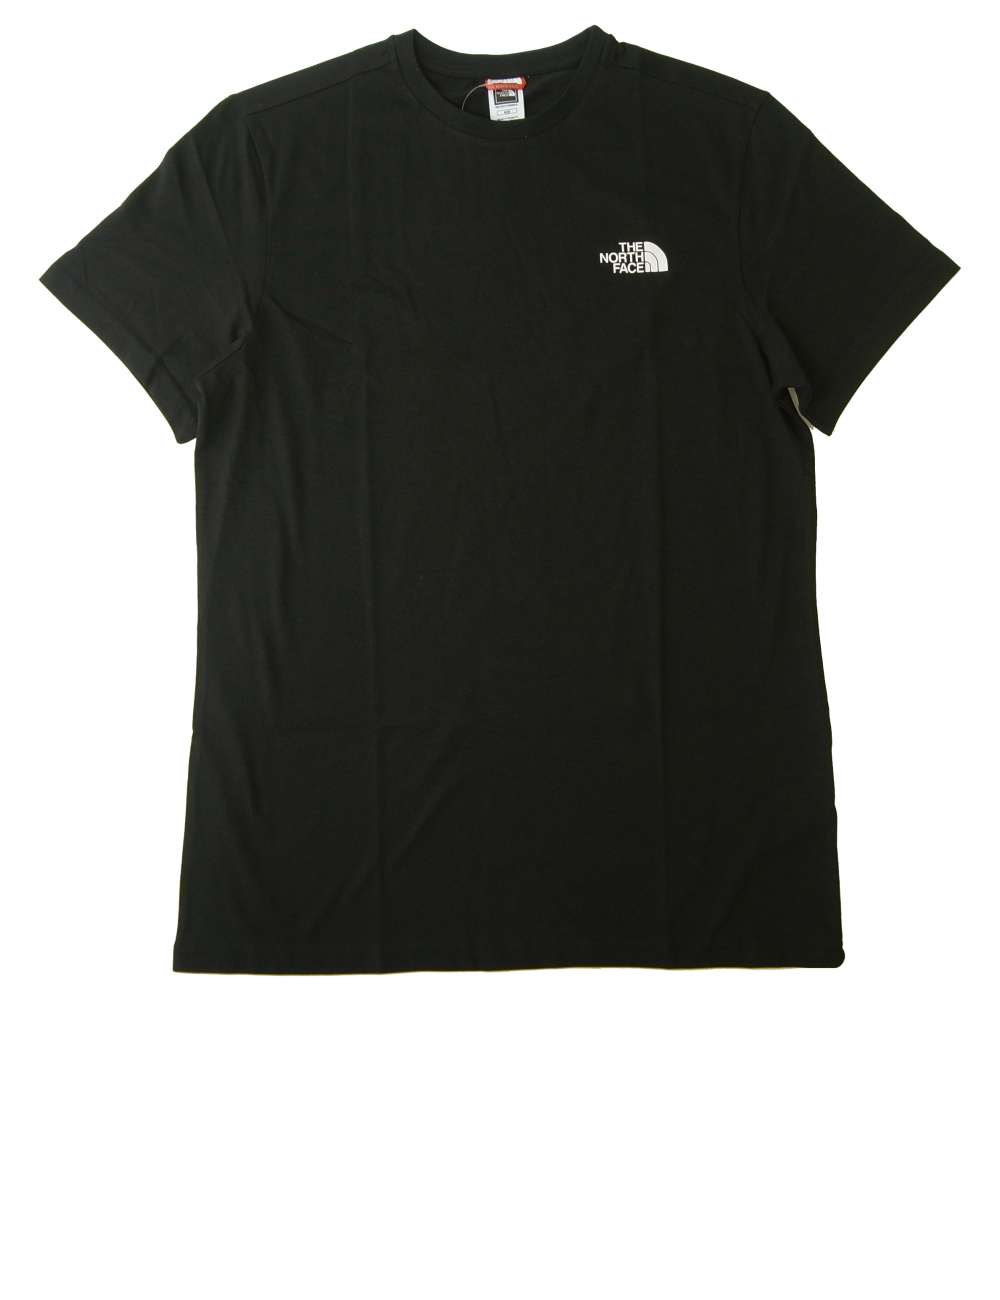 ザノースフェイス Tシャツ メンズ ブラック コットン 綿 Simple Dome